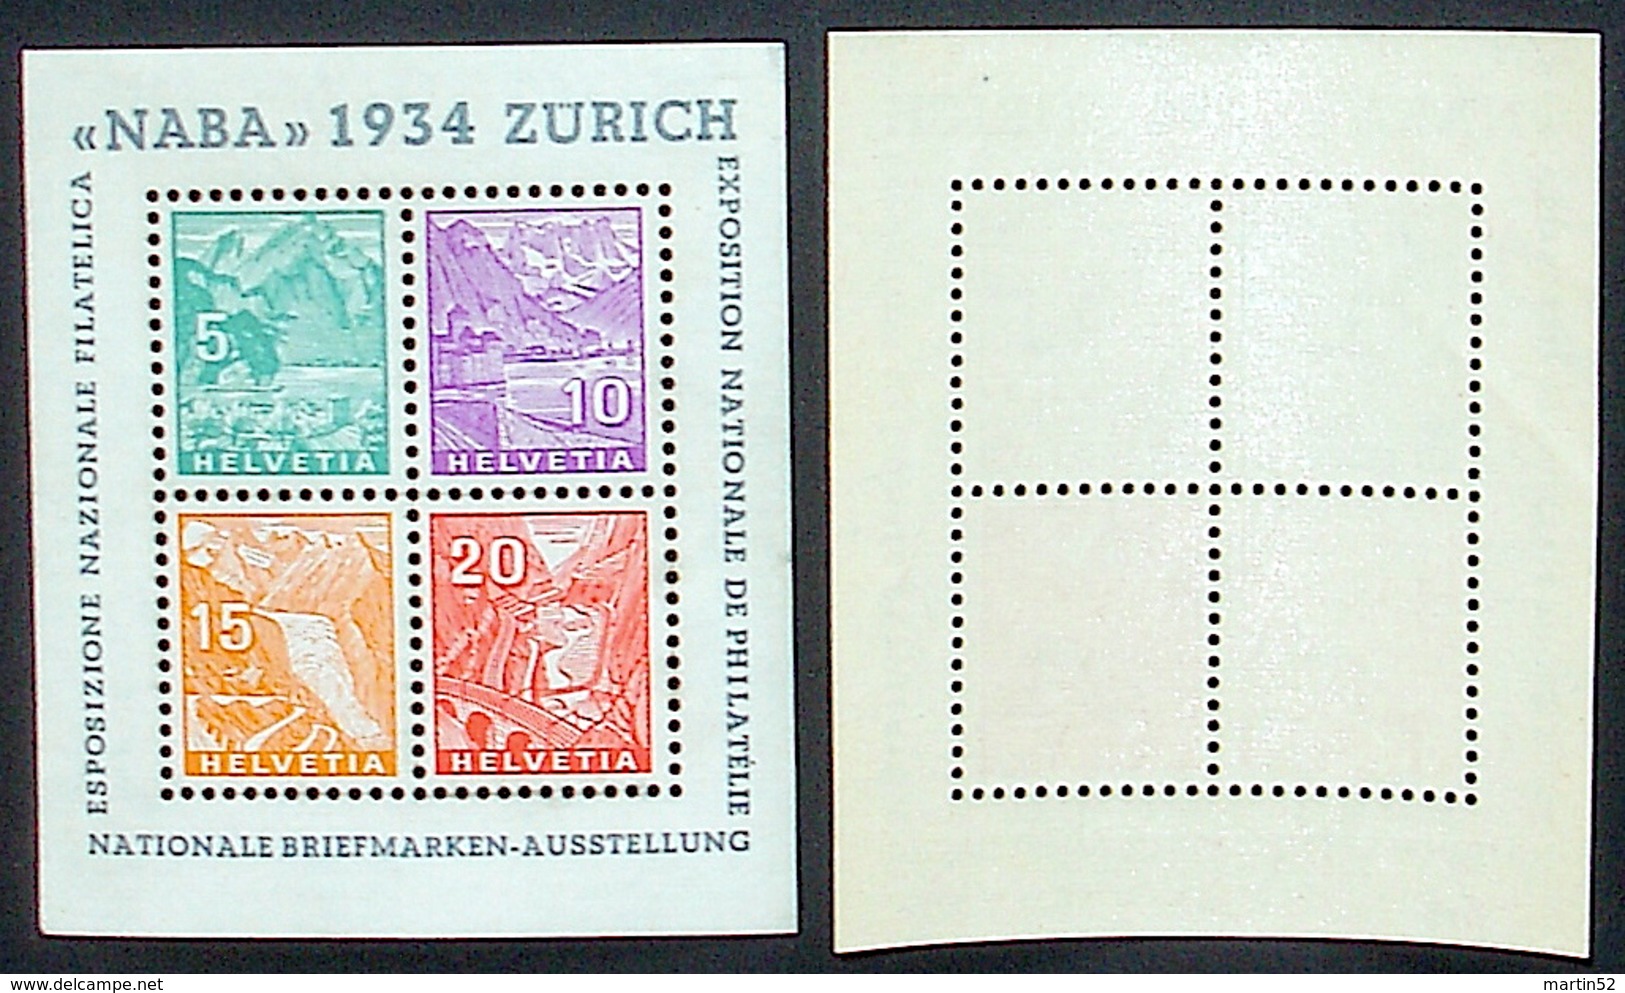 Schweiz Suisse Expo "NABA 1934" Zumstein WIII-1 Michel Block Yvert 1 BF 1 ** Postfrisch MNH  Plus Ausstellung-Vignette - Blocks & Kleinbögen